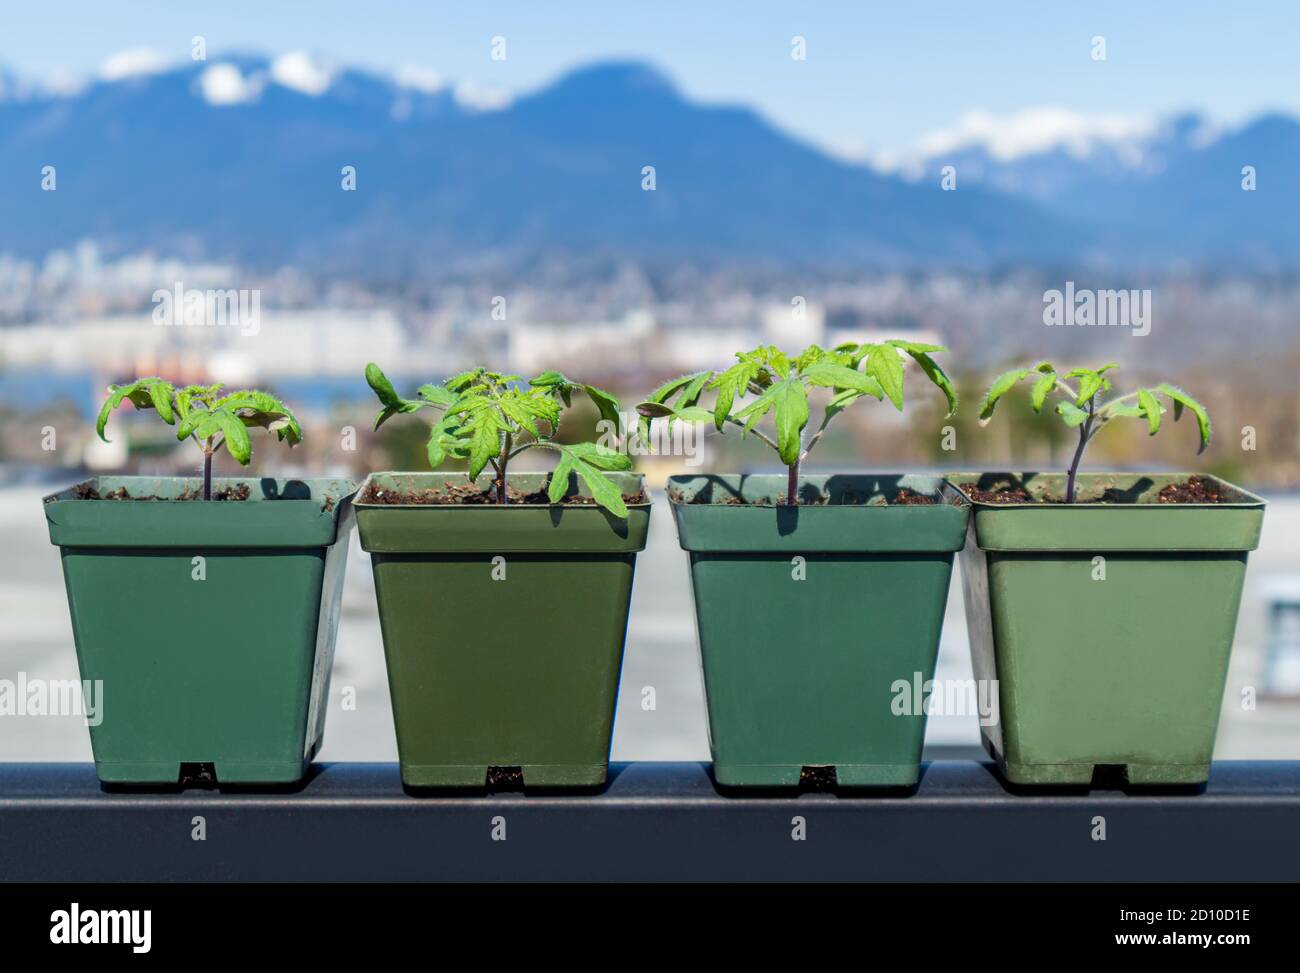 Mehrere Tomatenpflanzen in kleinen Behältern mit verschwommenem Landschaftshintergrund. North Vancouver. Selbstversorger Dachterrasse Gemüsegarten. Stockfoto